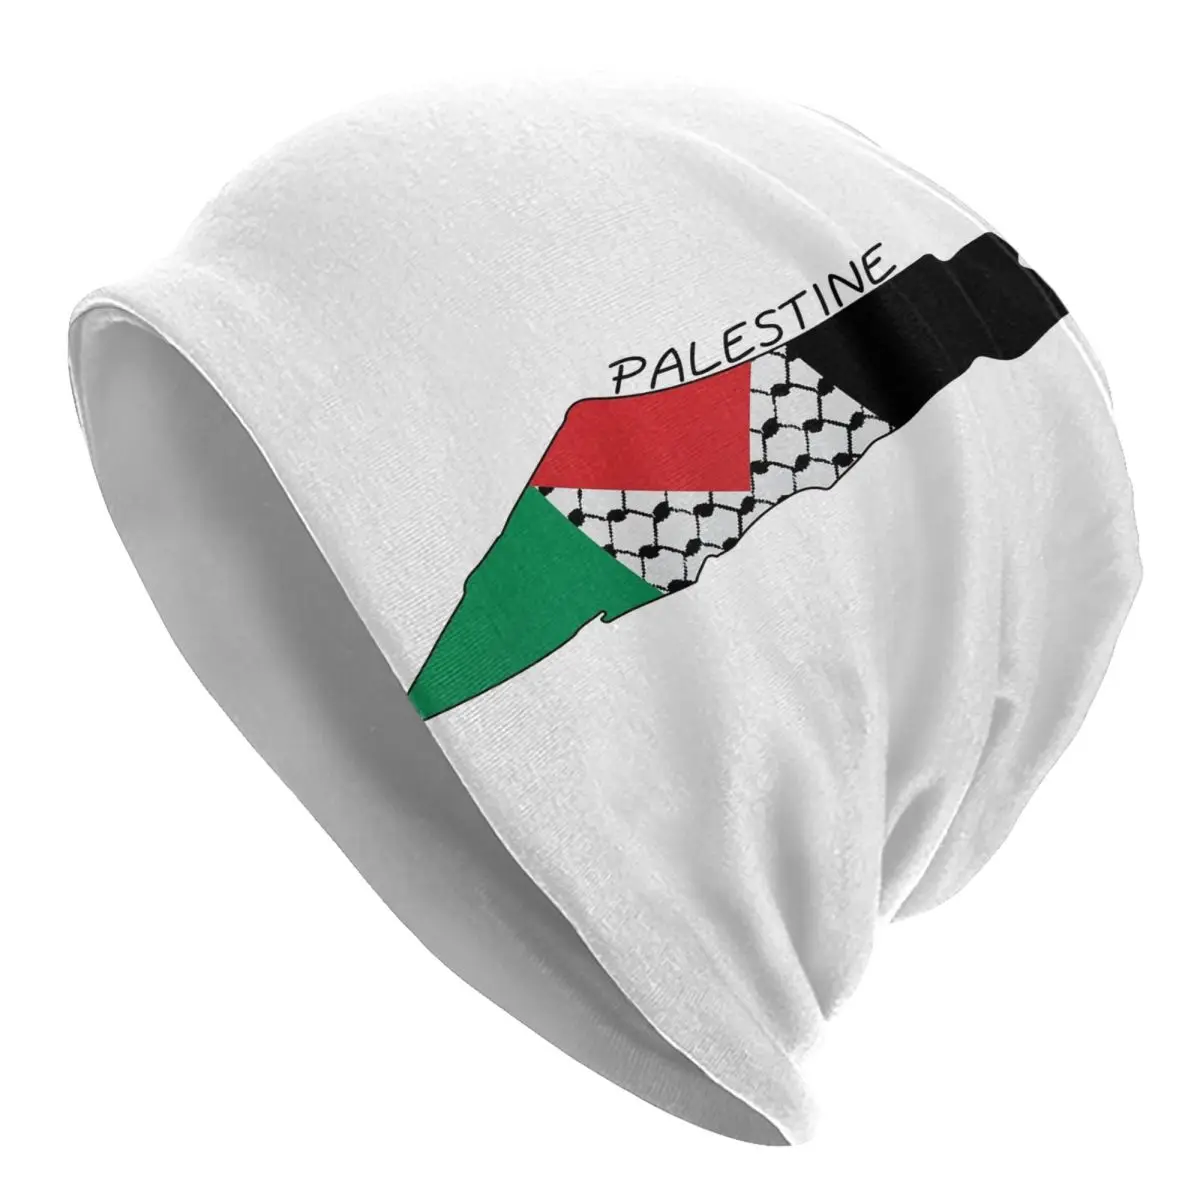 Drapeau Palestine / drapeau palestinien qualité Unic